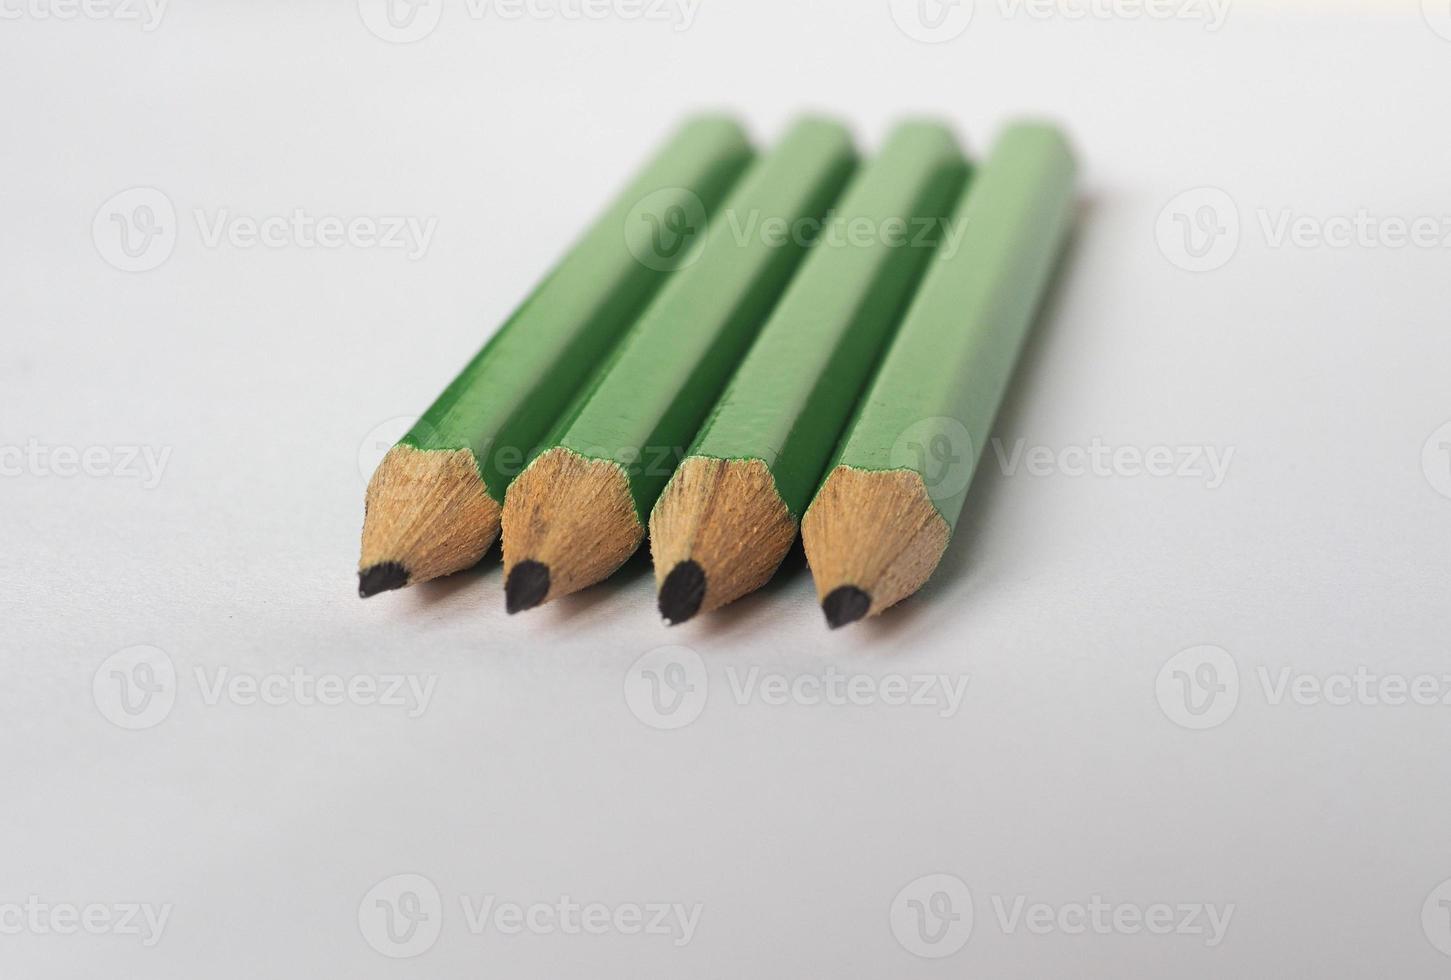 quatre crayons verts sur une feuille de papier photo